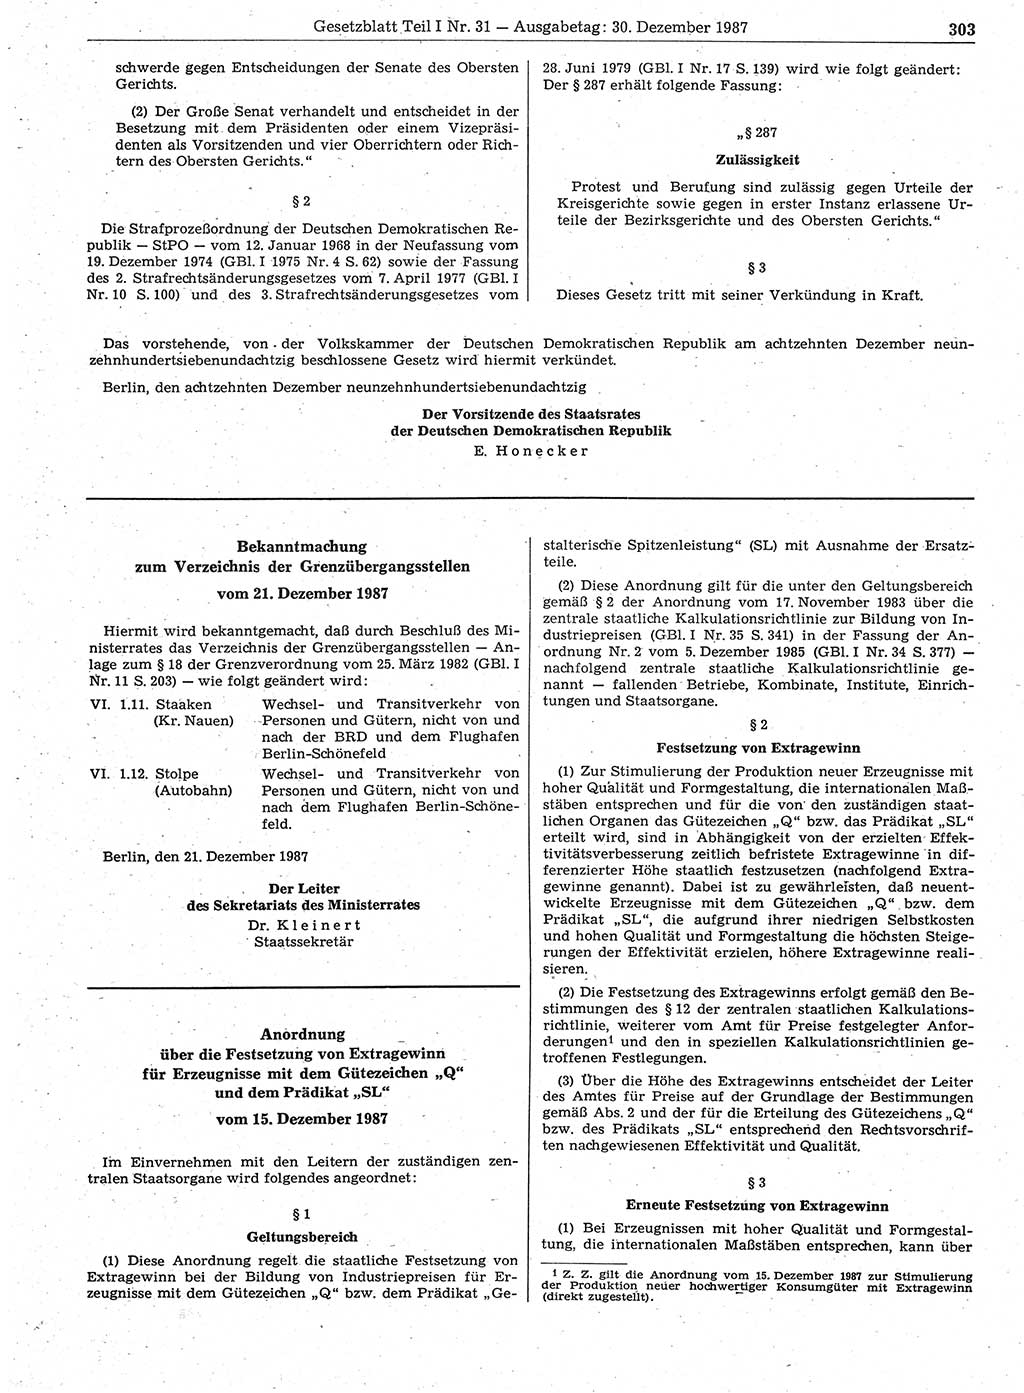 Gesetzblatt (GBl.) der Deutschen Demokratischen Republik (DDR) Teil Ⅰ 1987, Seite 303 (GBl. DDR Ⅰ 1987, S. 303)